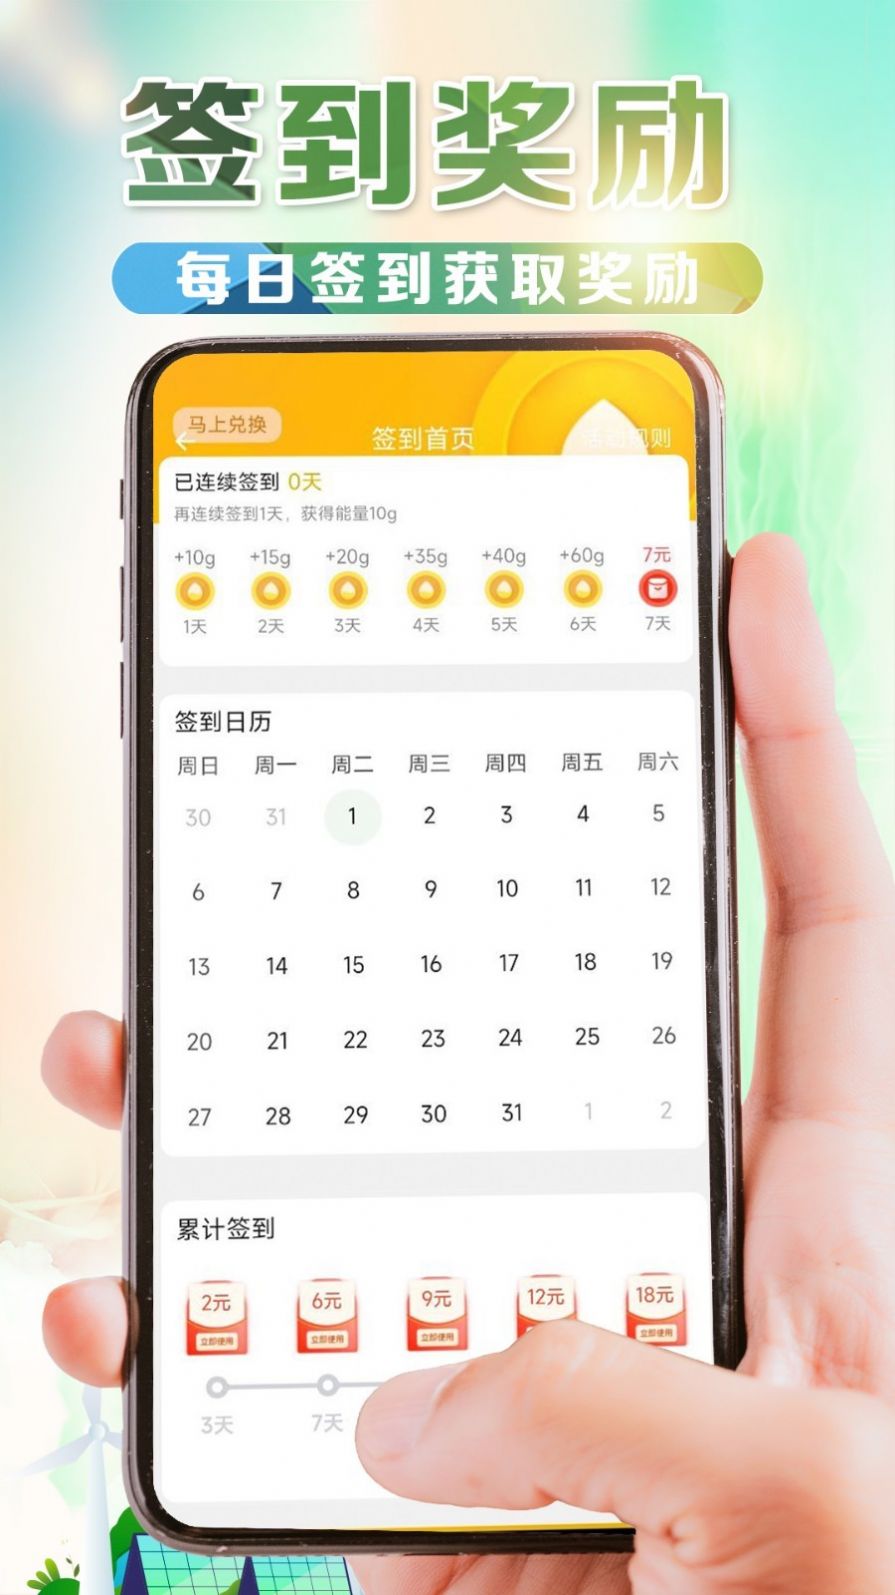 e桩宝app下载,e桩宝app安卓版 v1.0.3